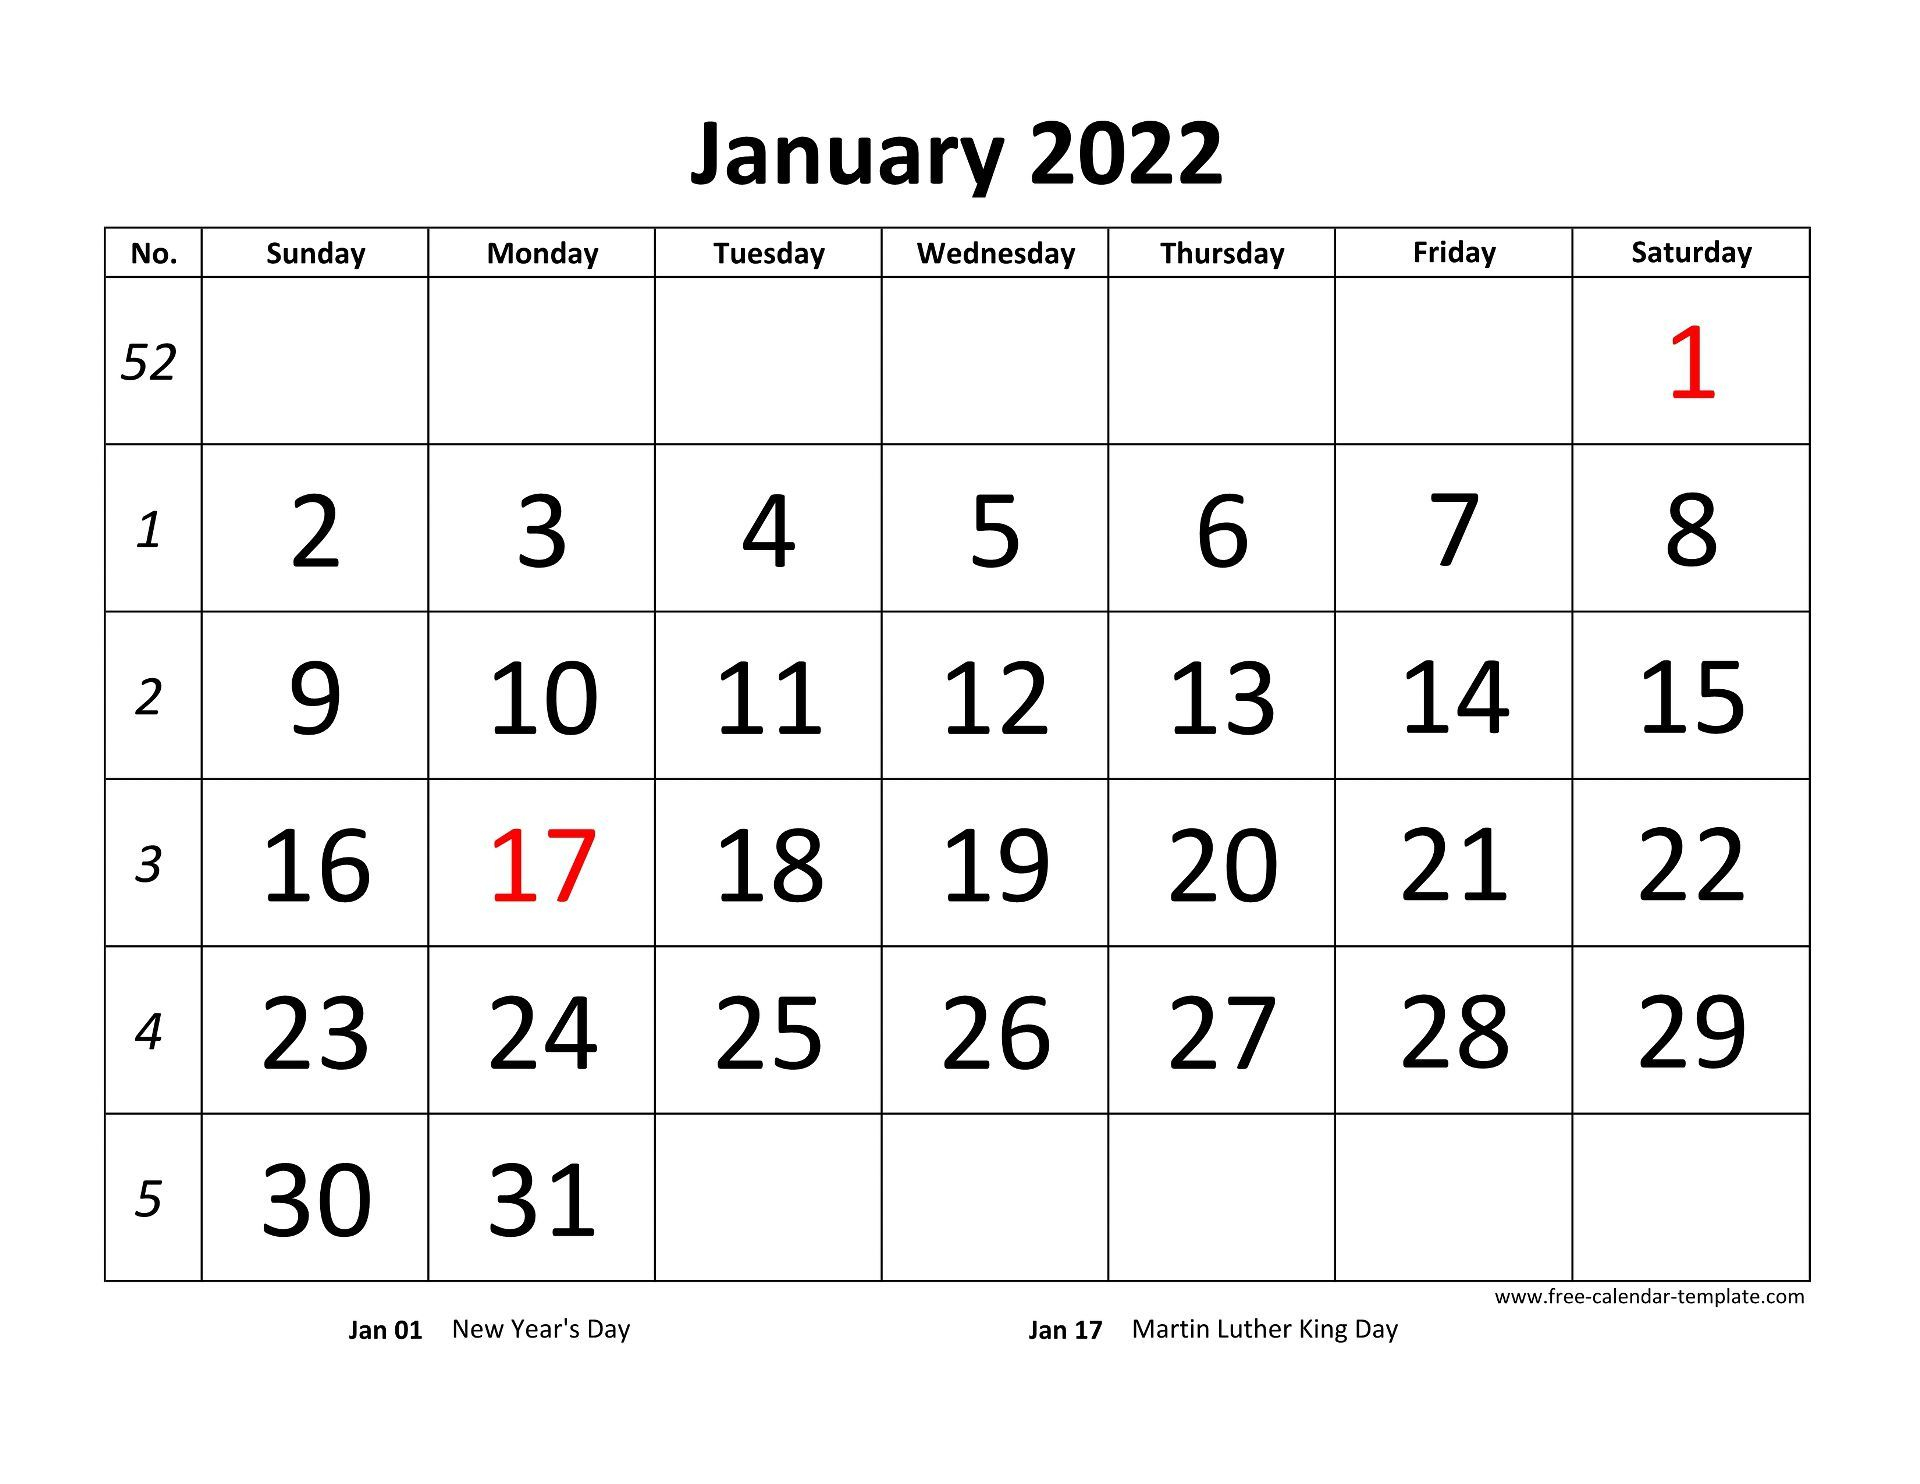 January 2022 Calendar Horizontal | June 2022 Calendar